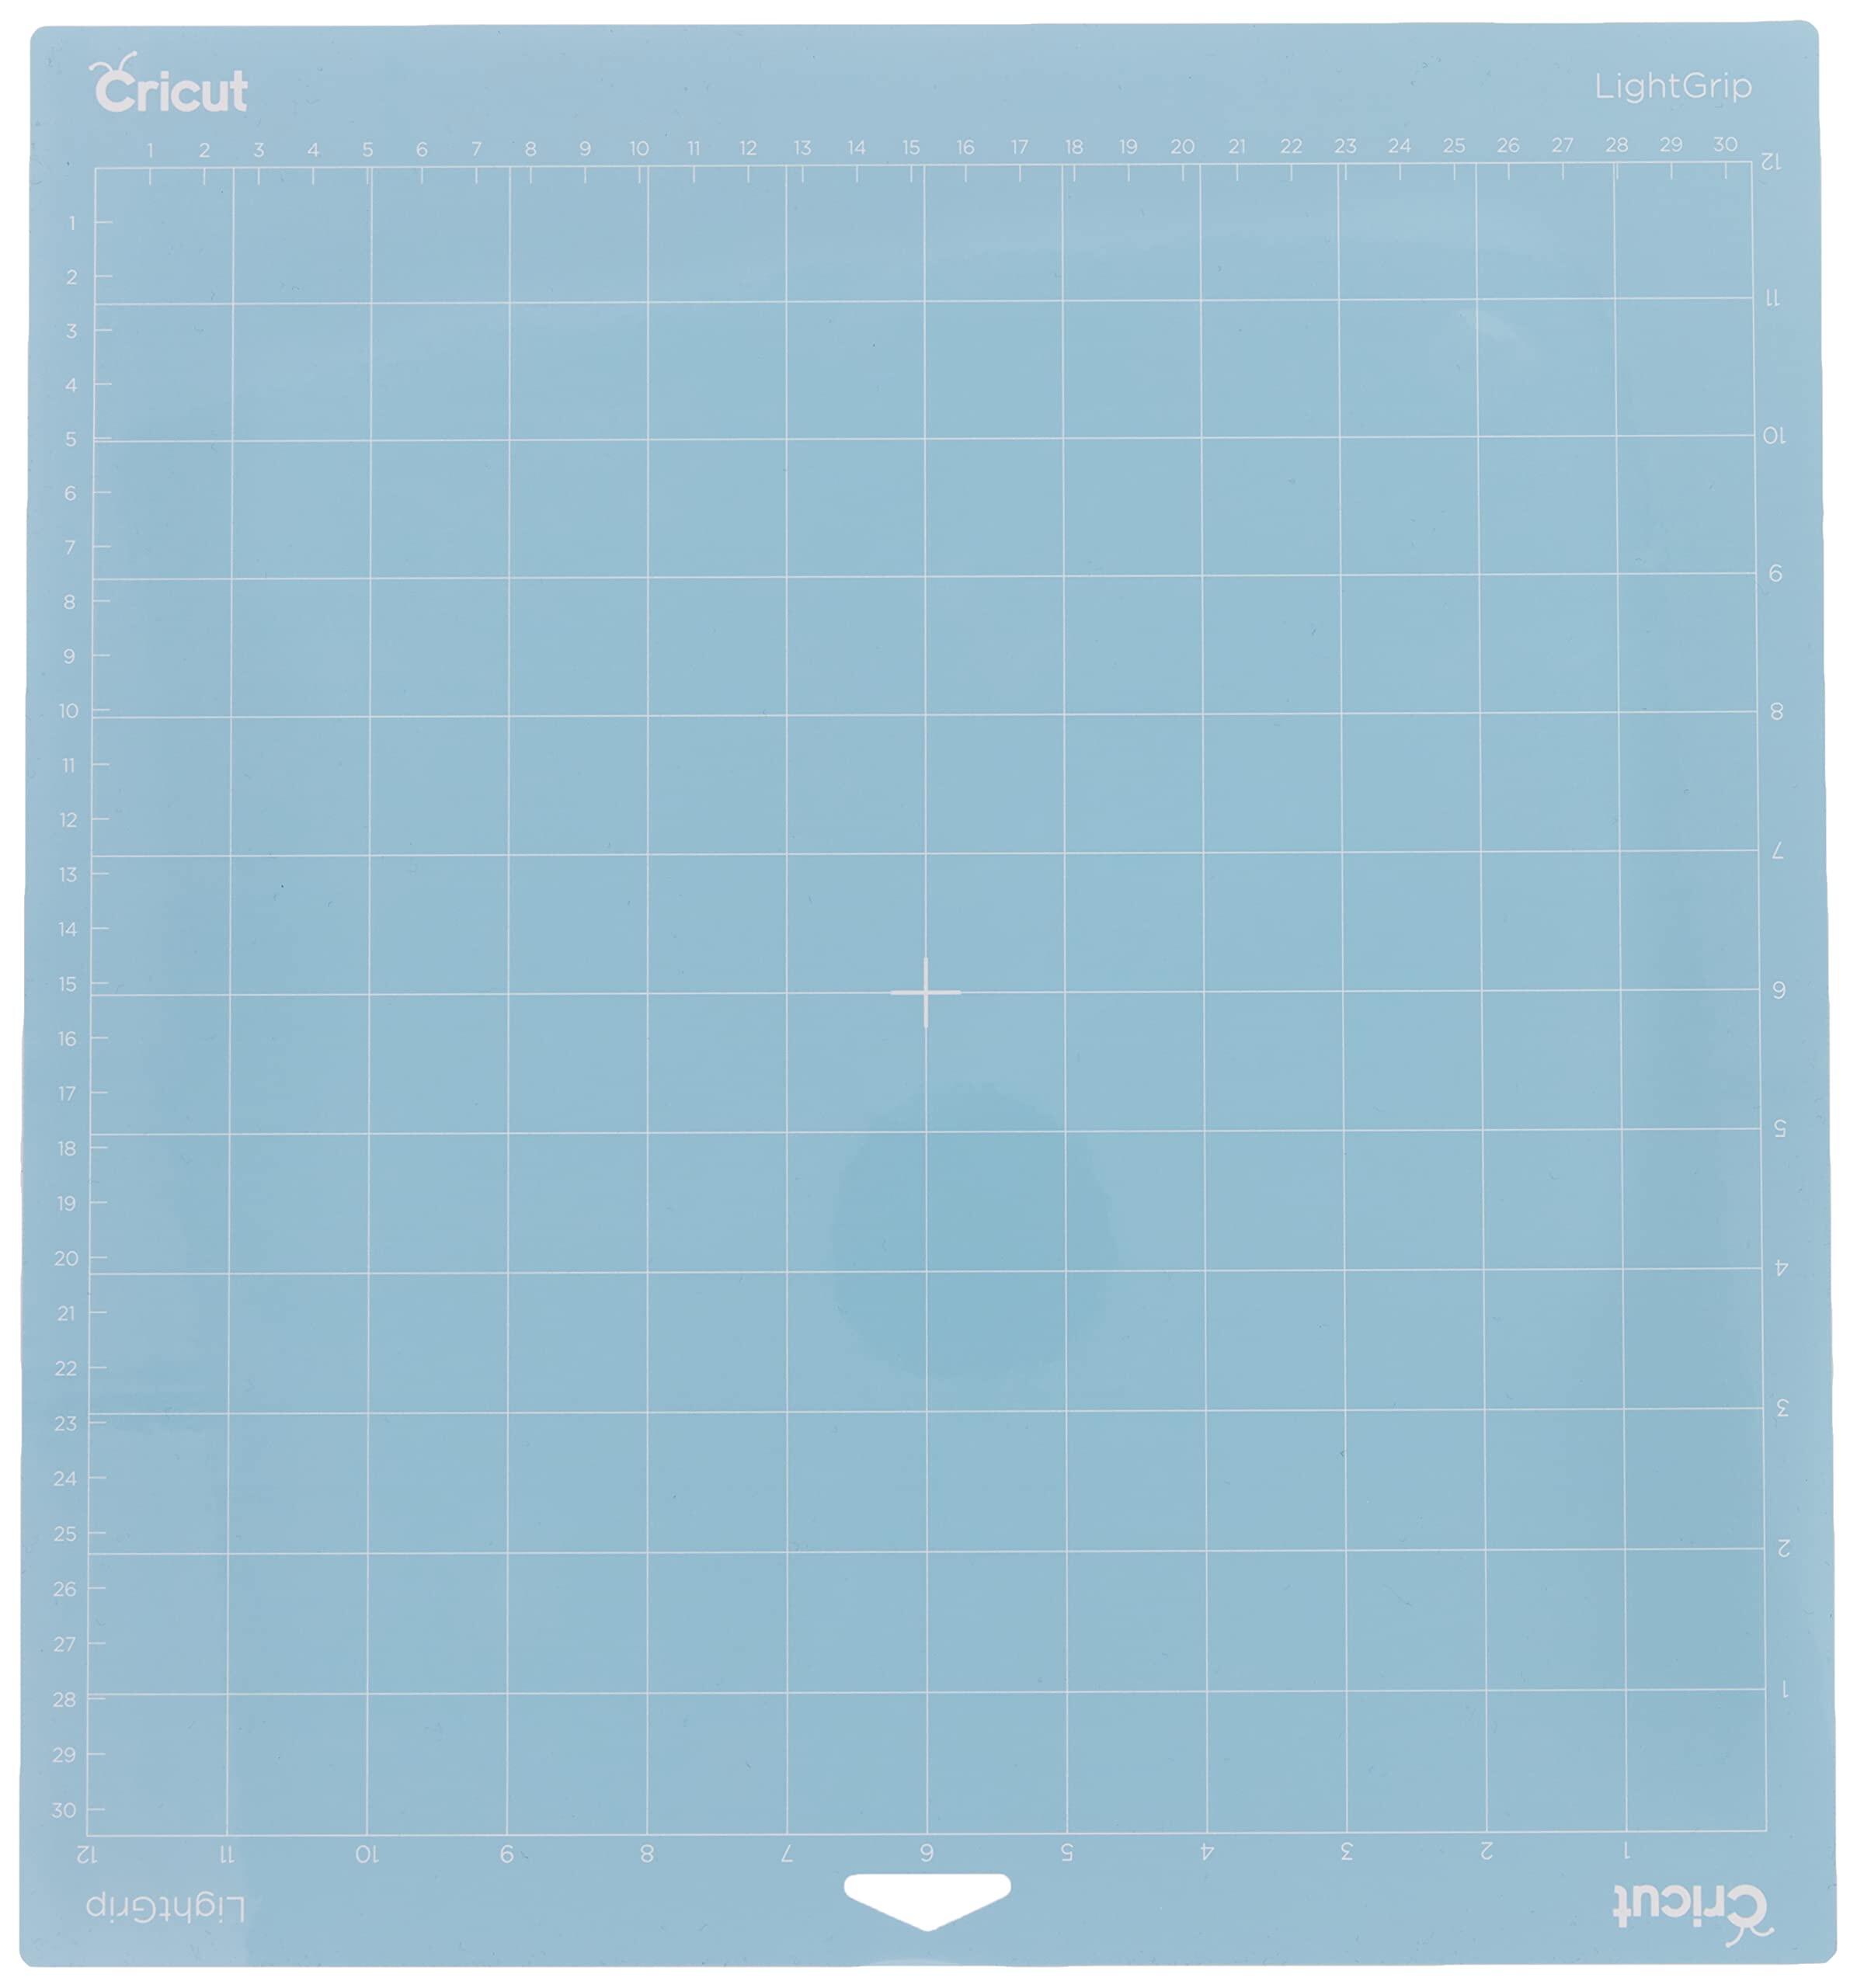 【国内正規品】Cricut カッティングマット / ライトグリップ (弱粘着タイプ) / 30.5cm x 30.5cm / Cutt..